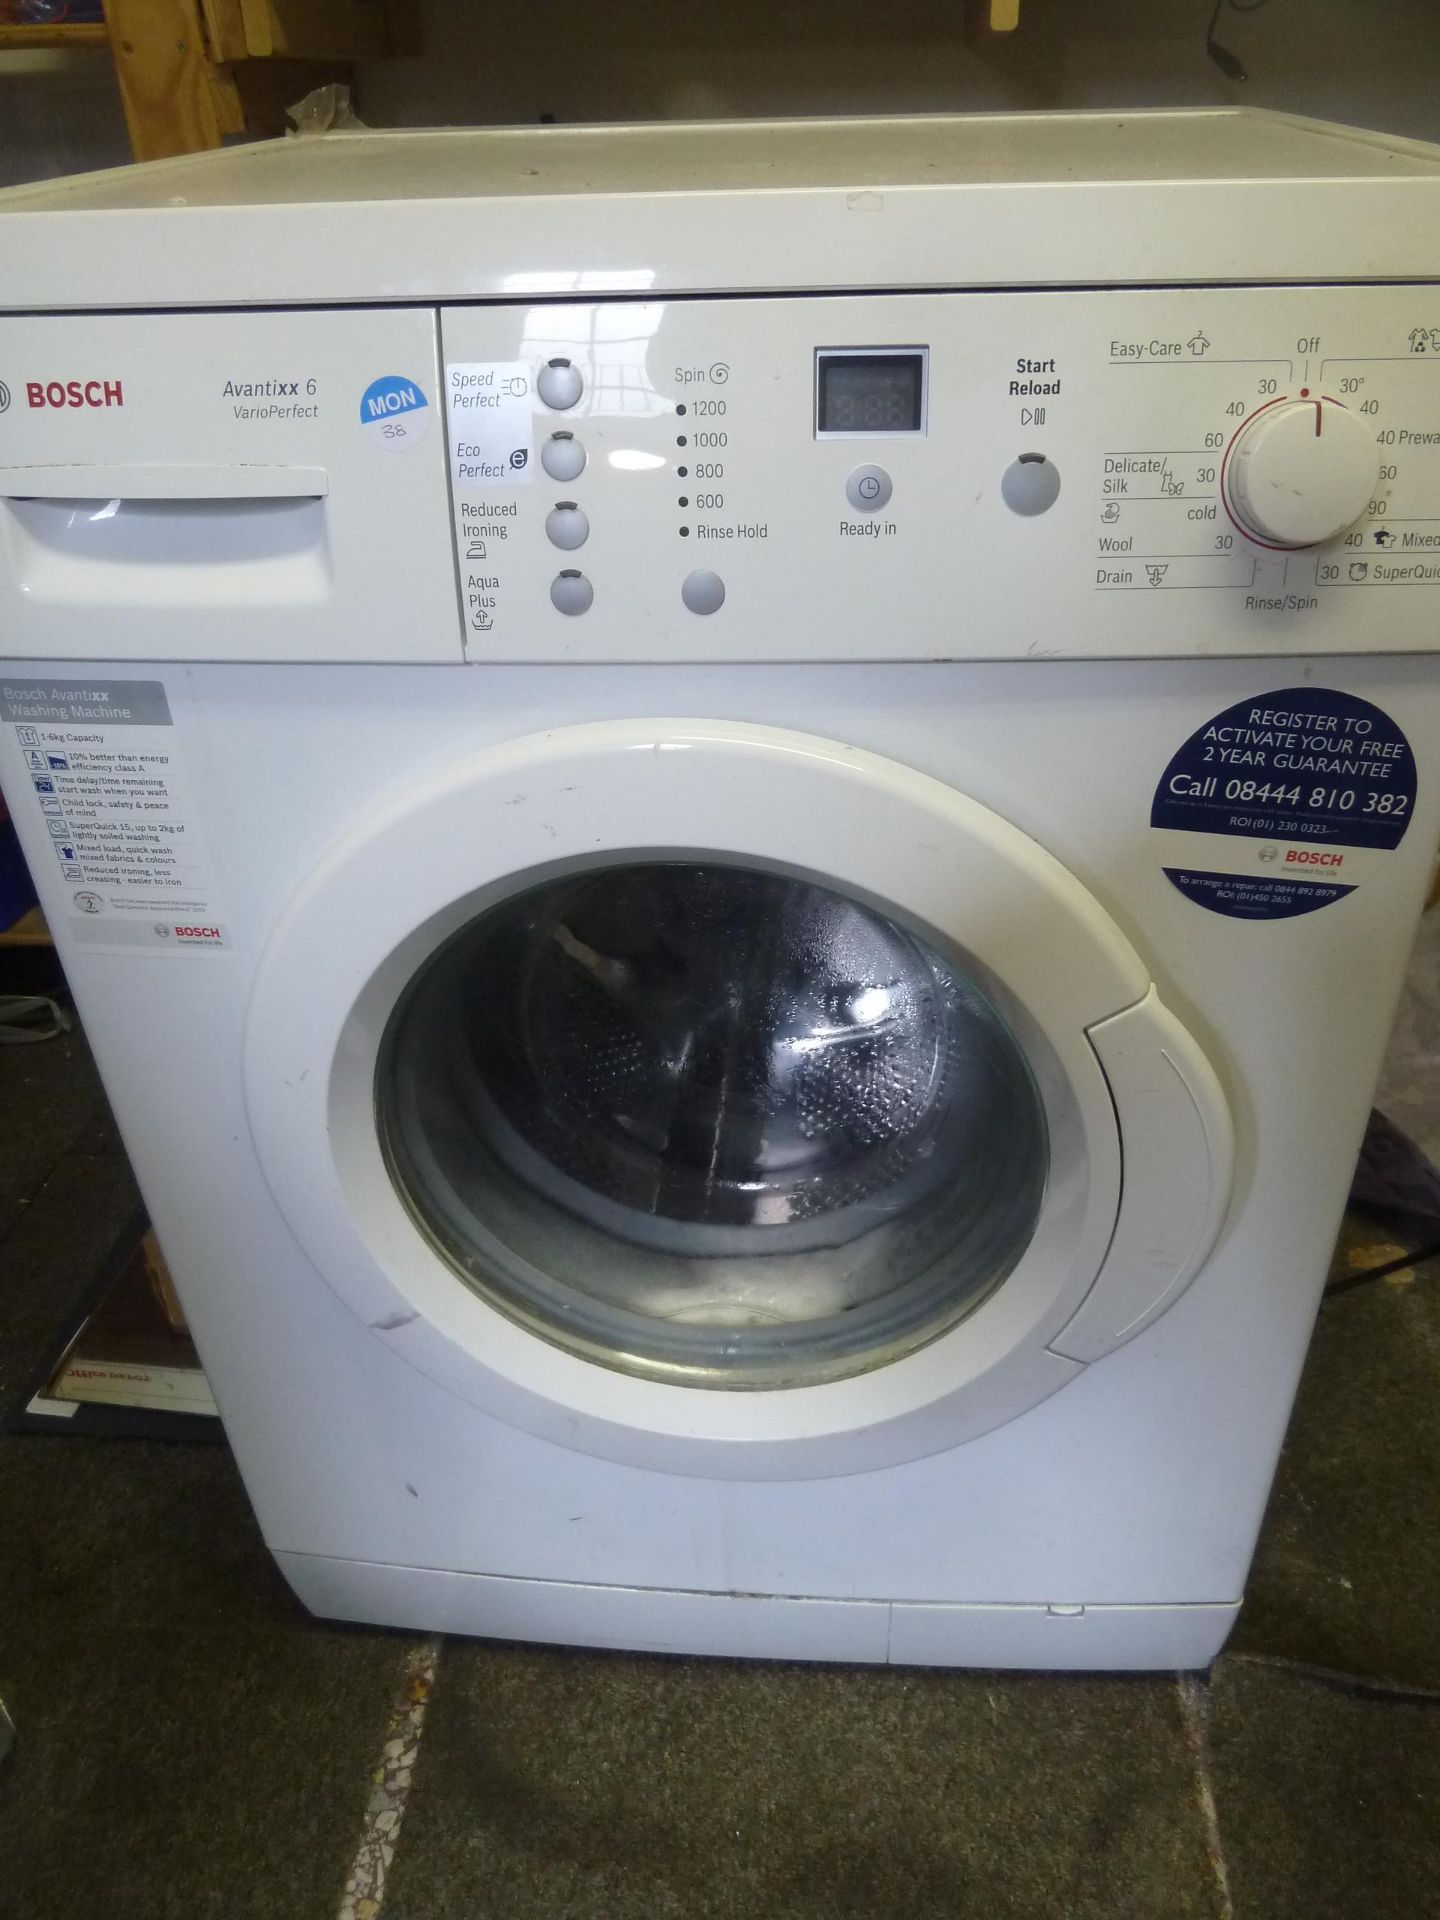 *Bosch Avantixx6 Vario Perfect washing machine - Image 5 of 6